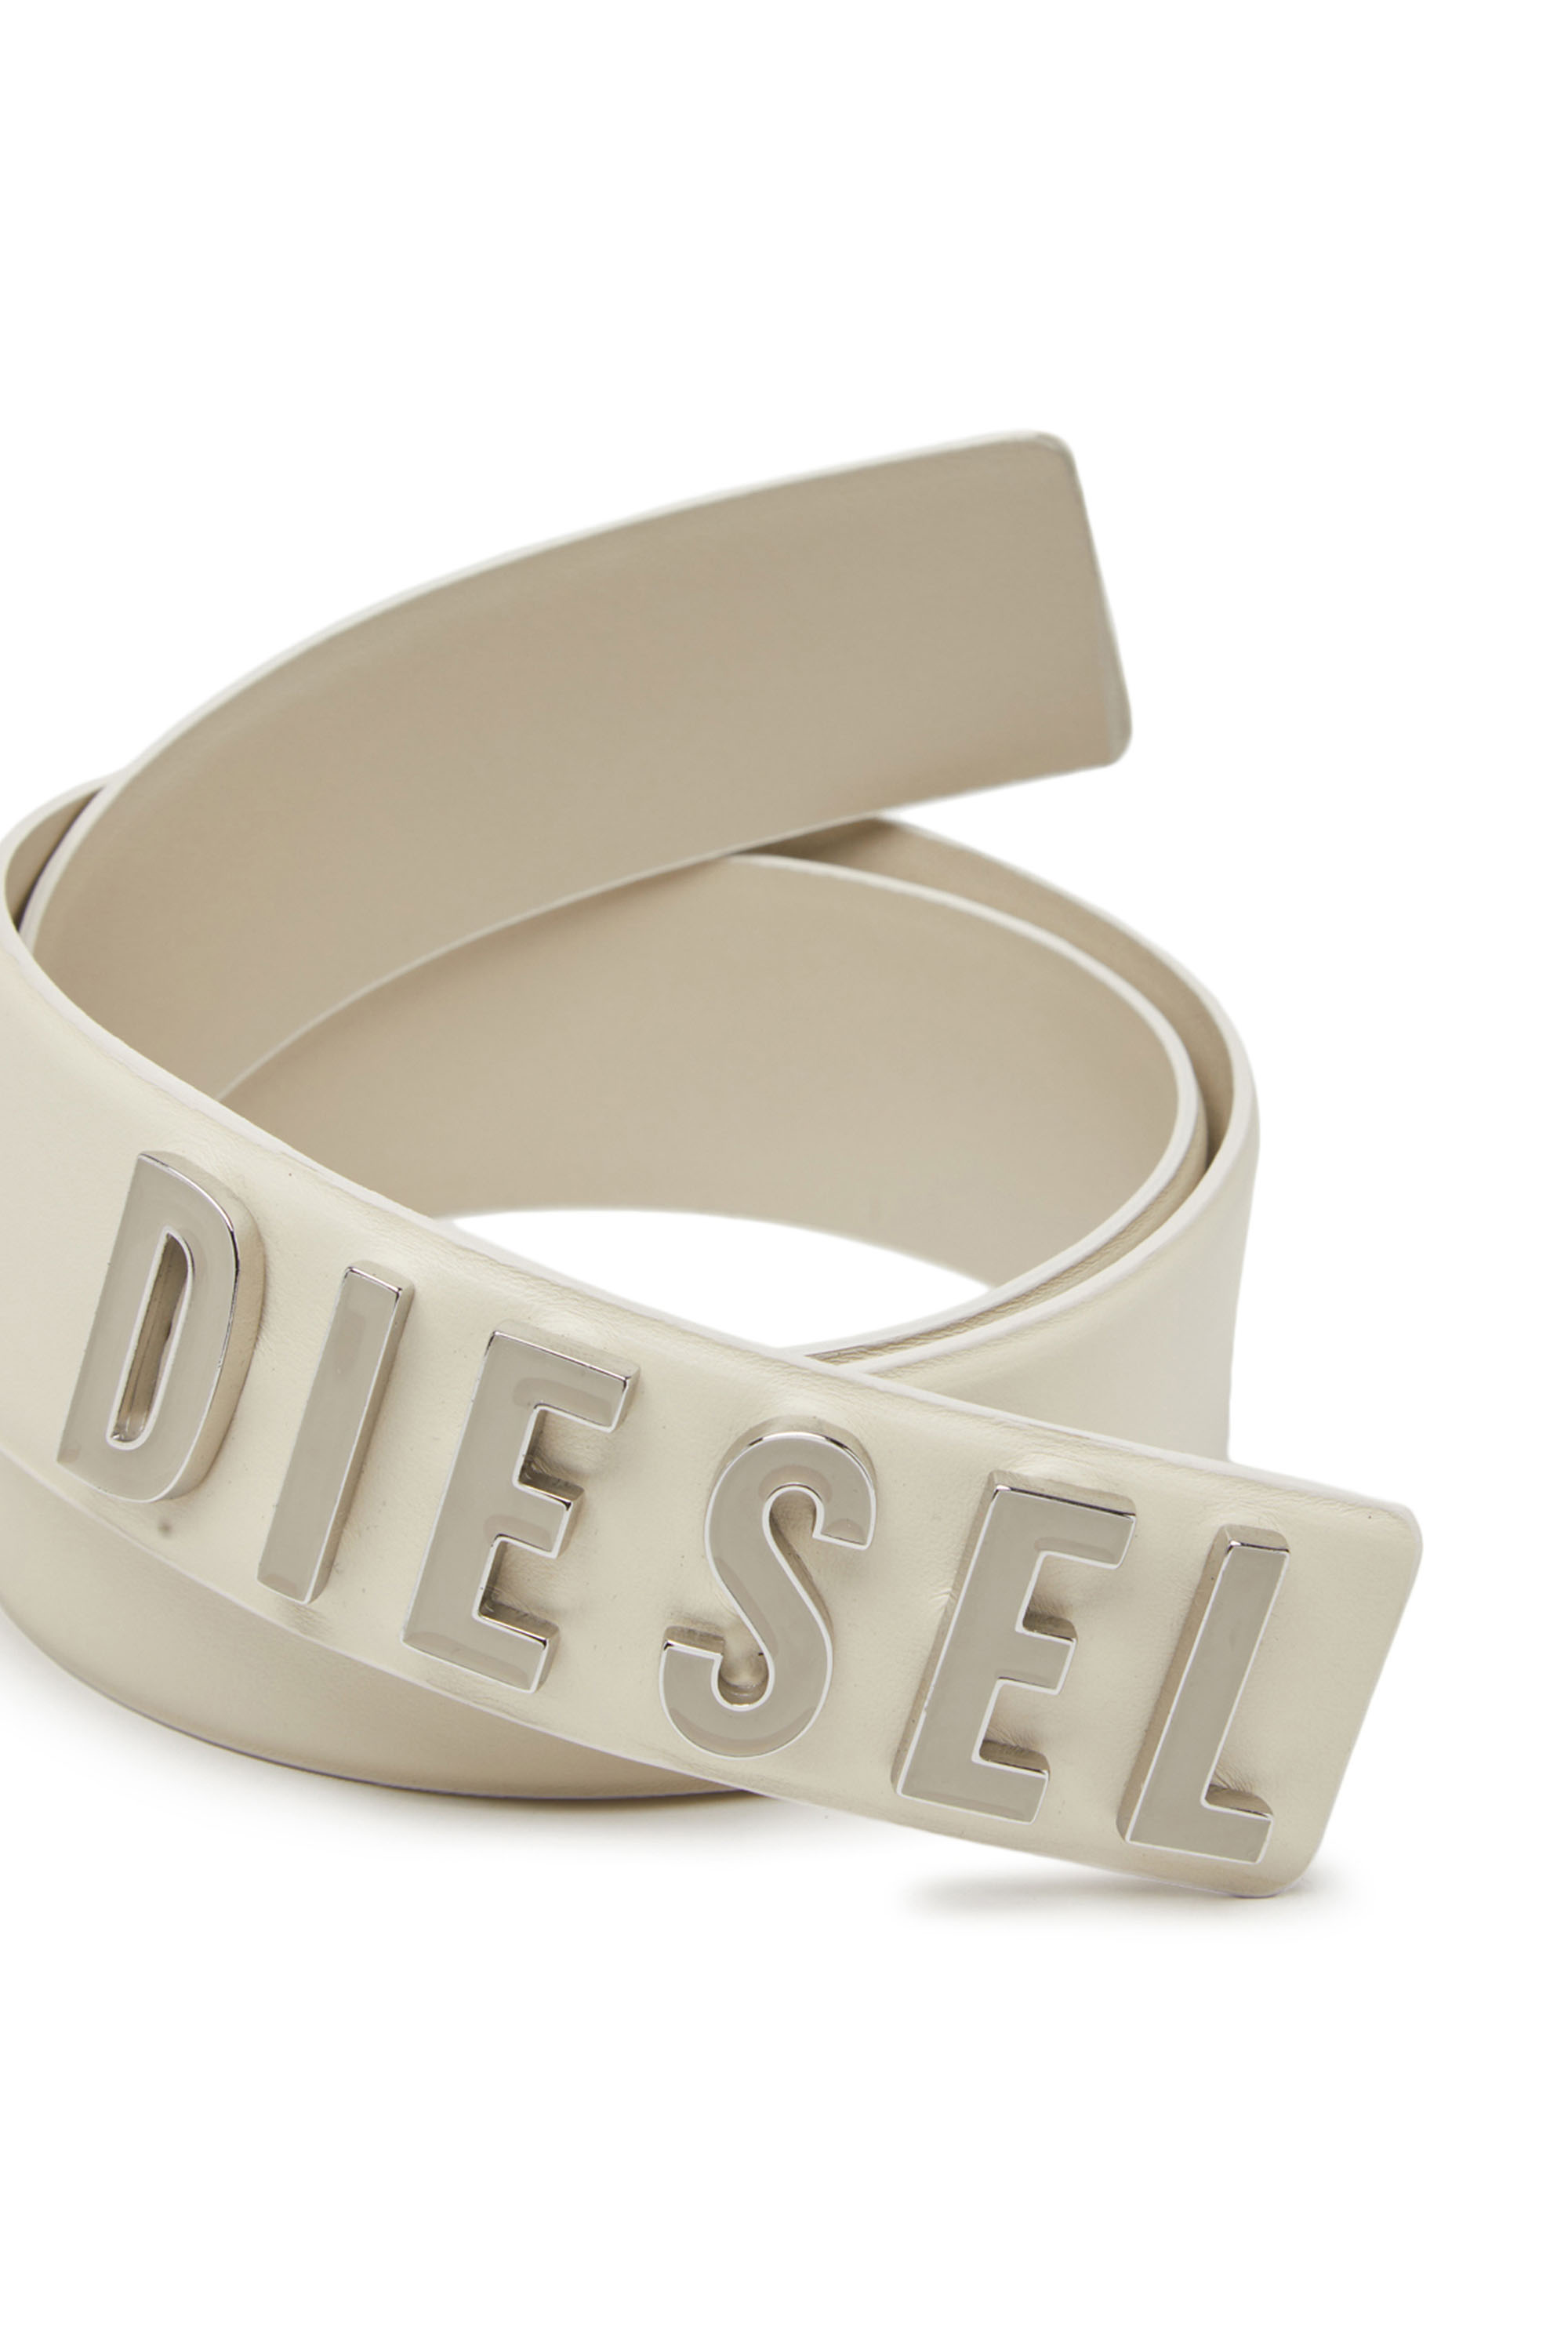 Diesel - B-LETTERS B, Bianco - Image 3